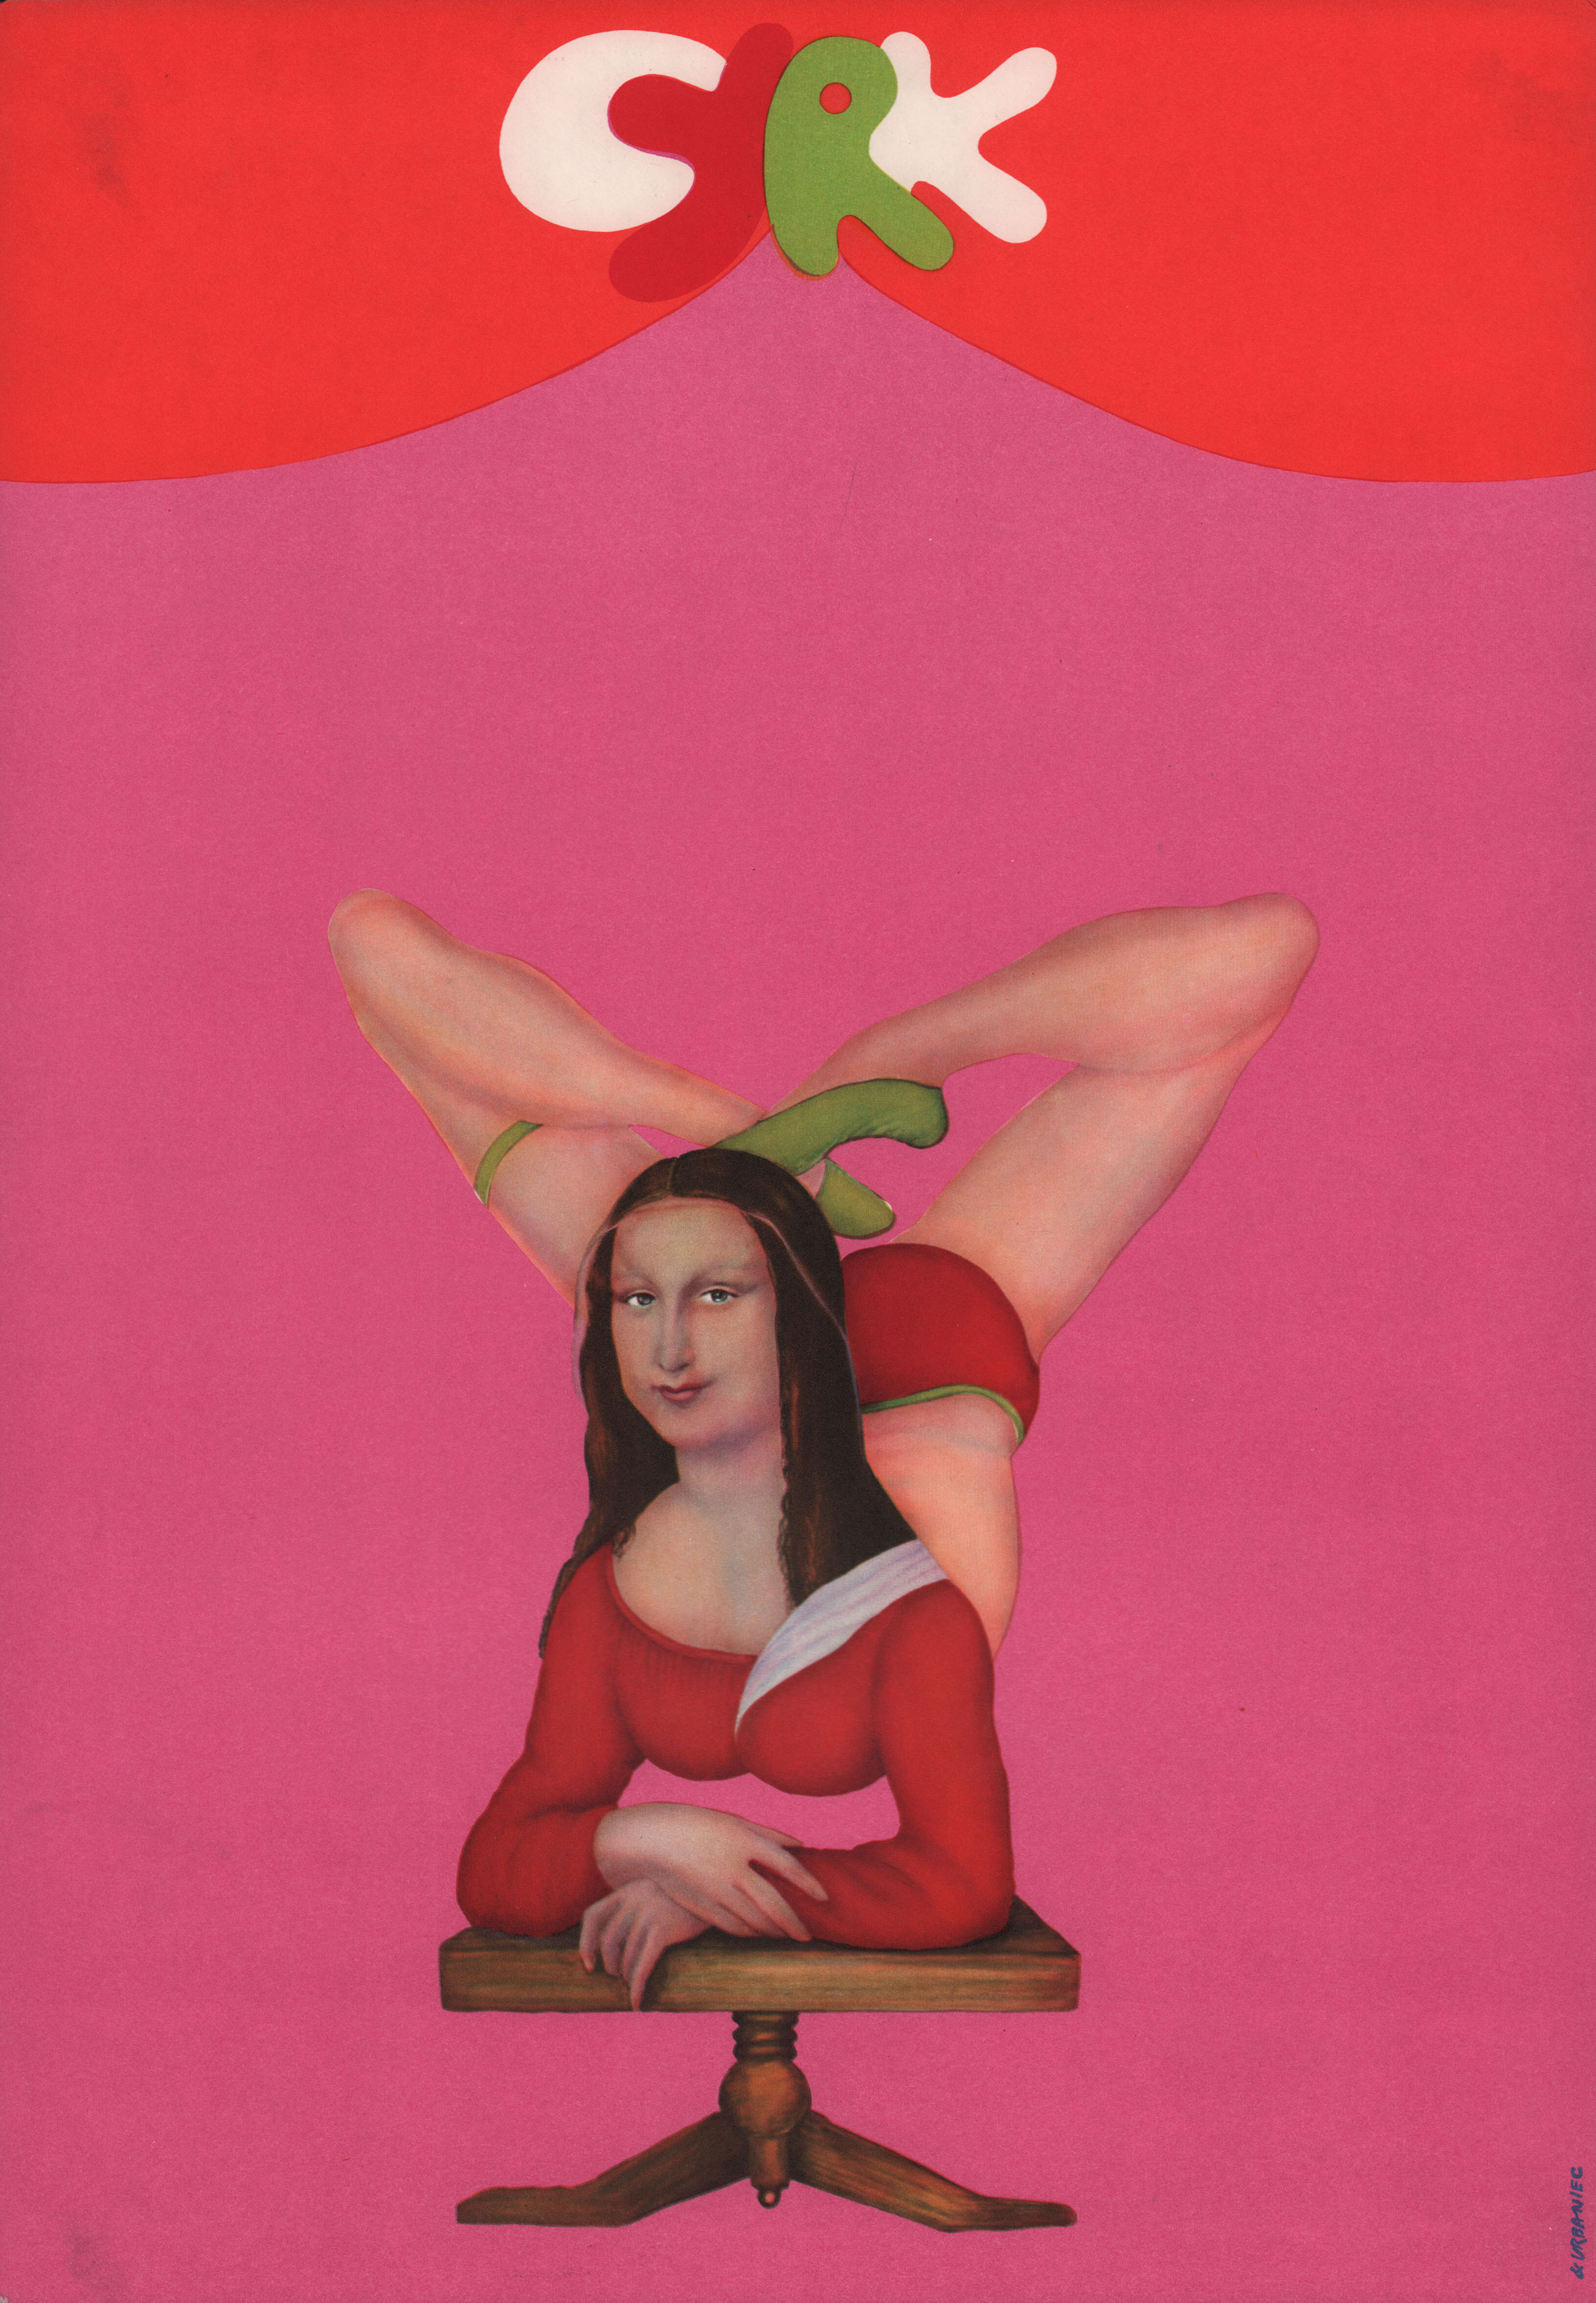 Цирк, минималистичный постер (Польша, 1970 год), автор Мацей Урбанец